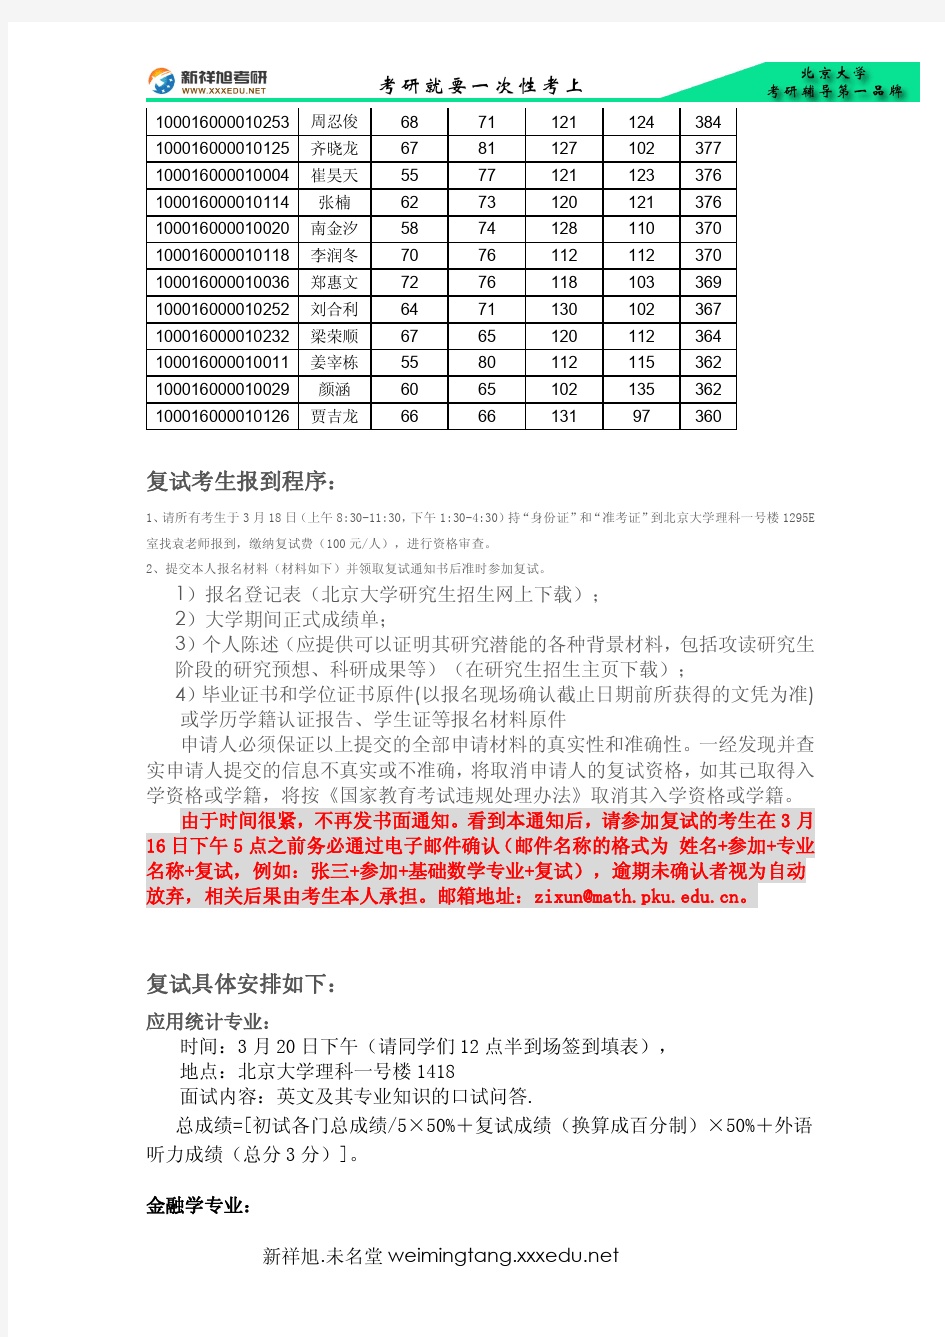 2016年北京大学数学学院考研复试名单及复试安排